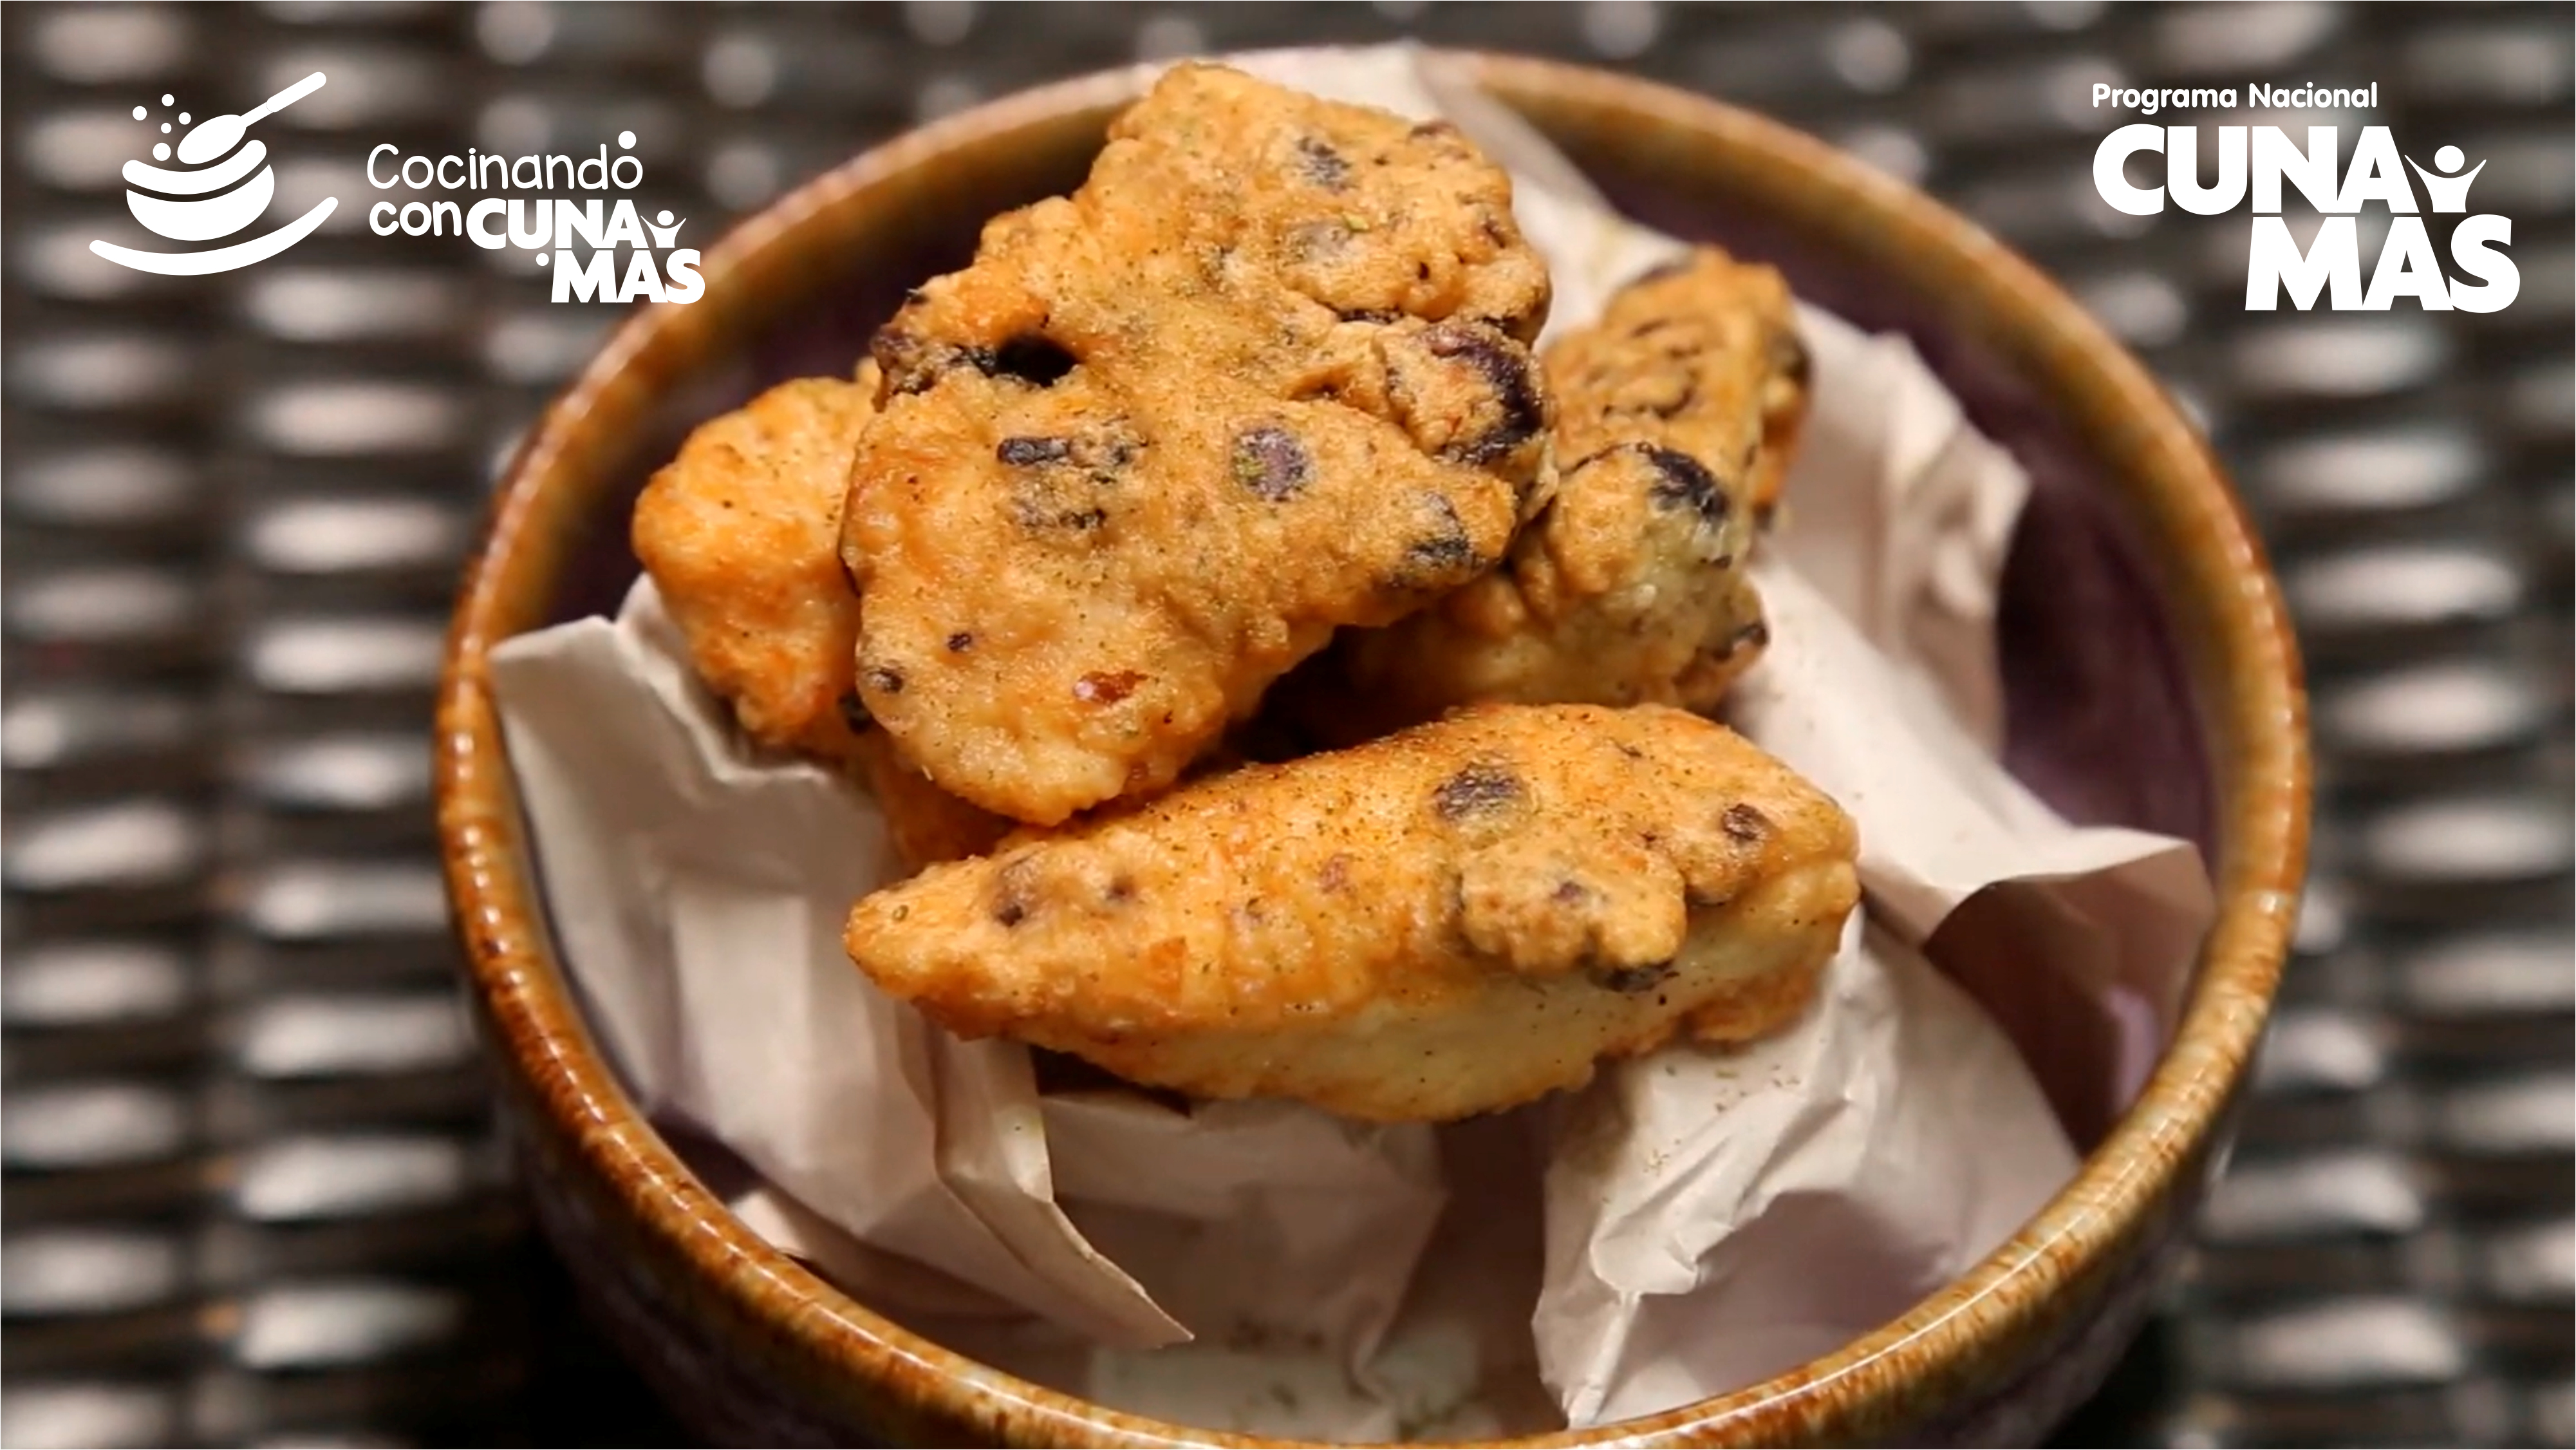 Cocinando con Cuna Más: Aprende a preparar saludables nuggets de pollo empanizados con maíz morado